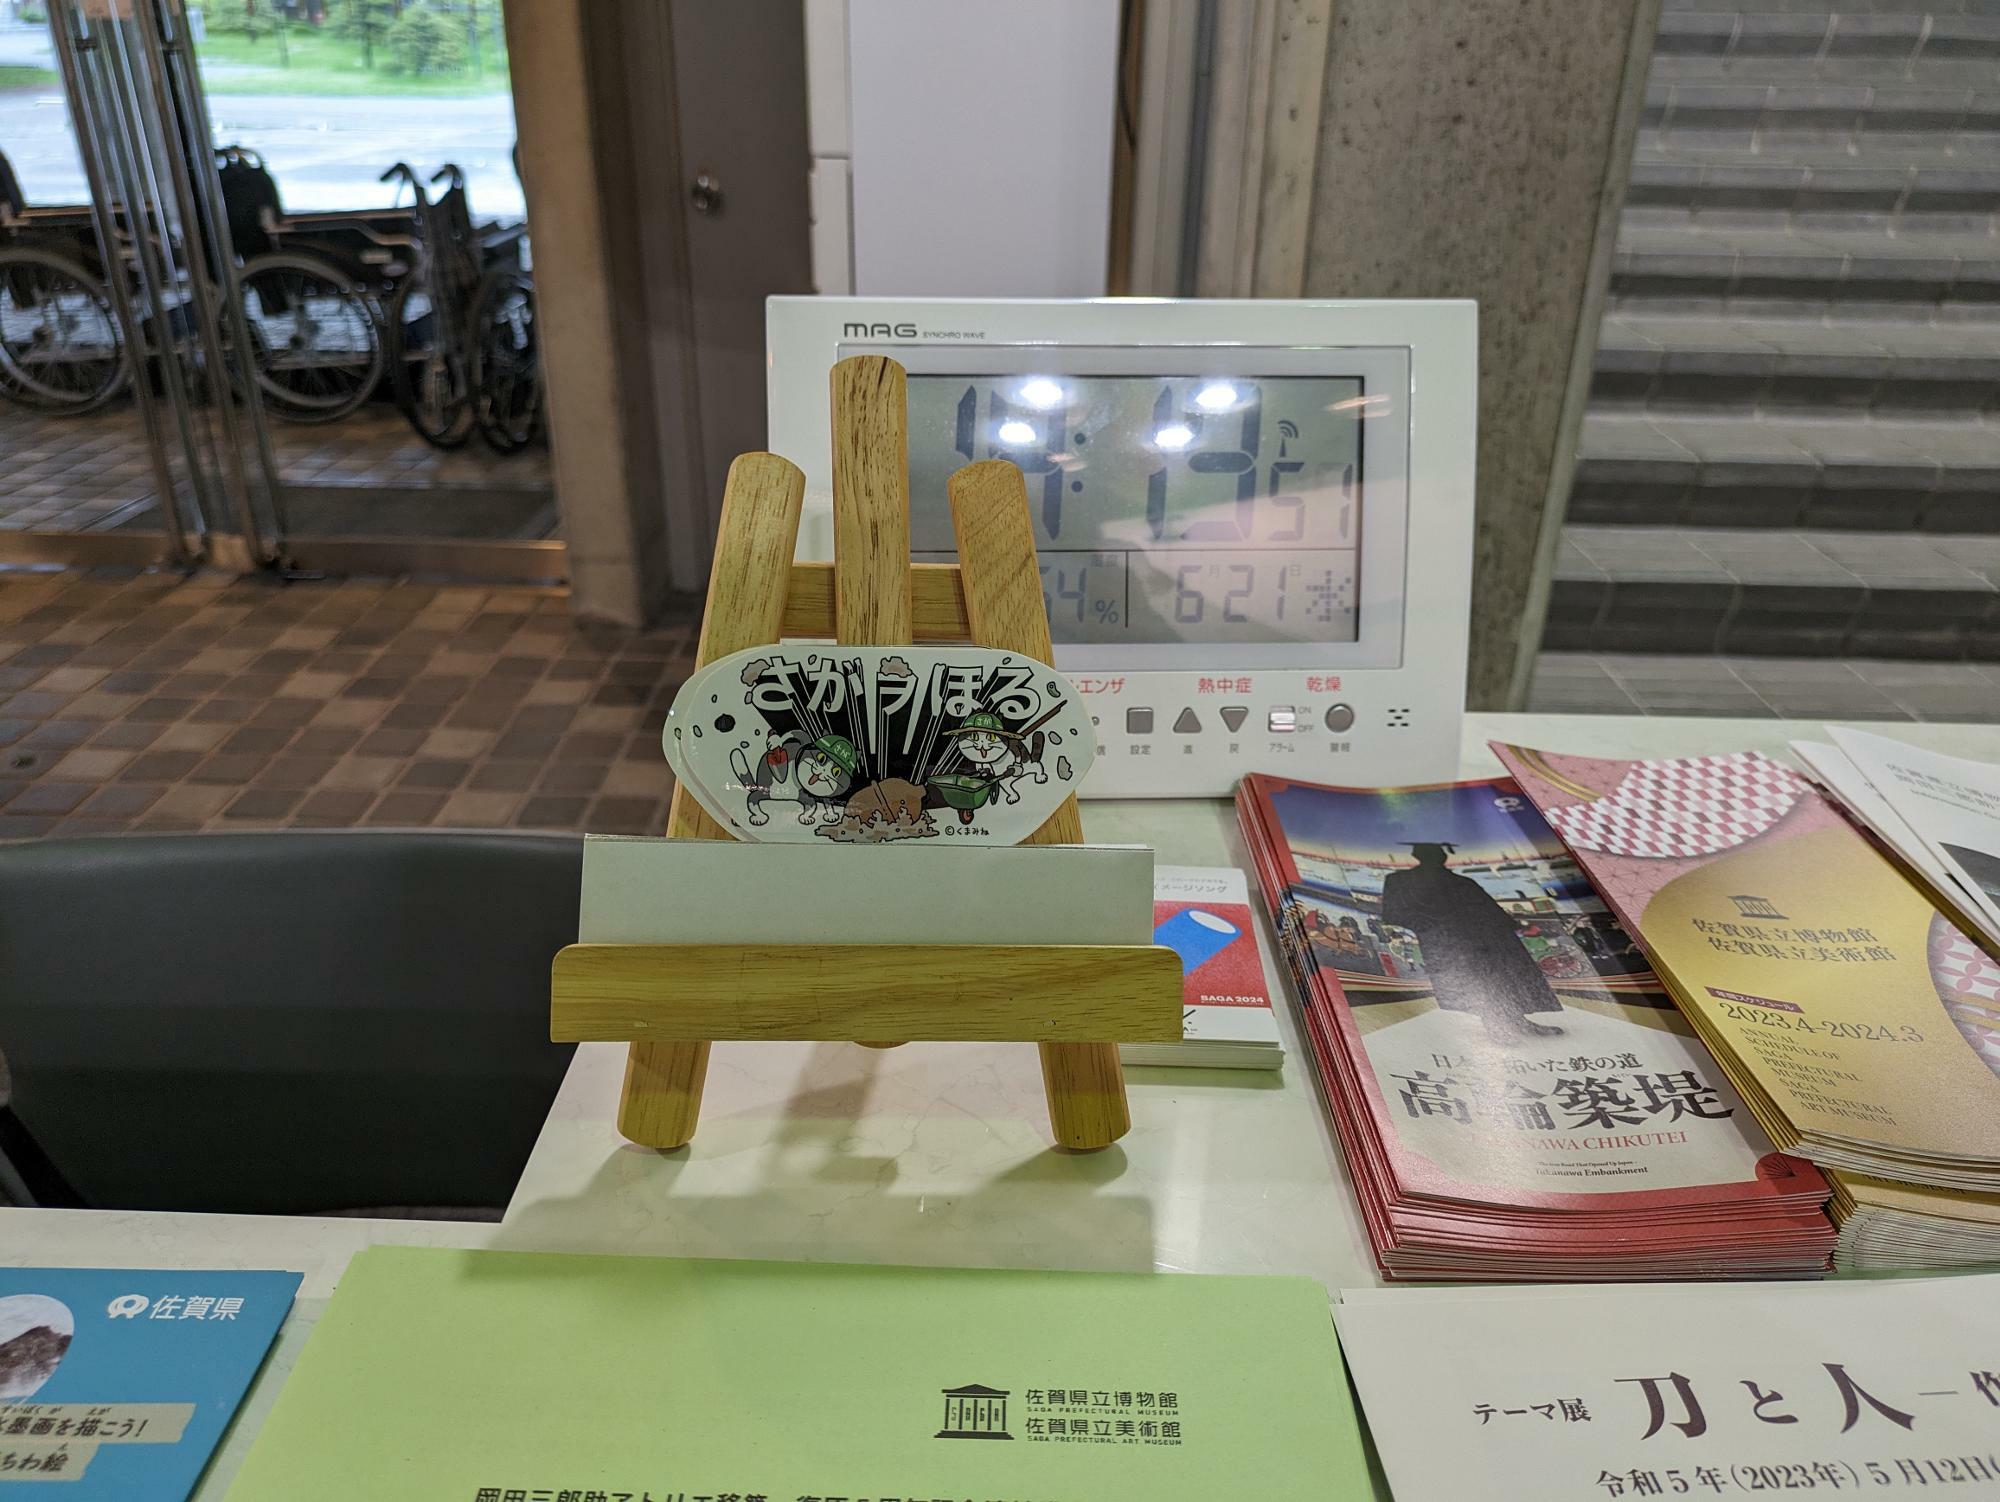 佐賀県立博物館で配布されている仕事猫とさがヲほるのコラボステッカー